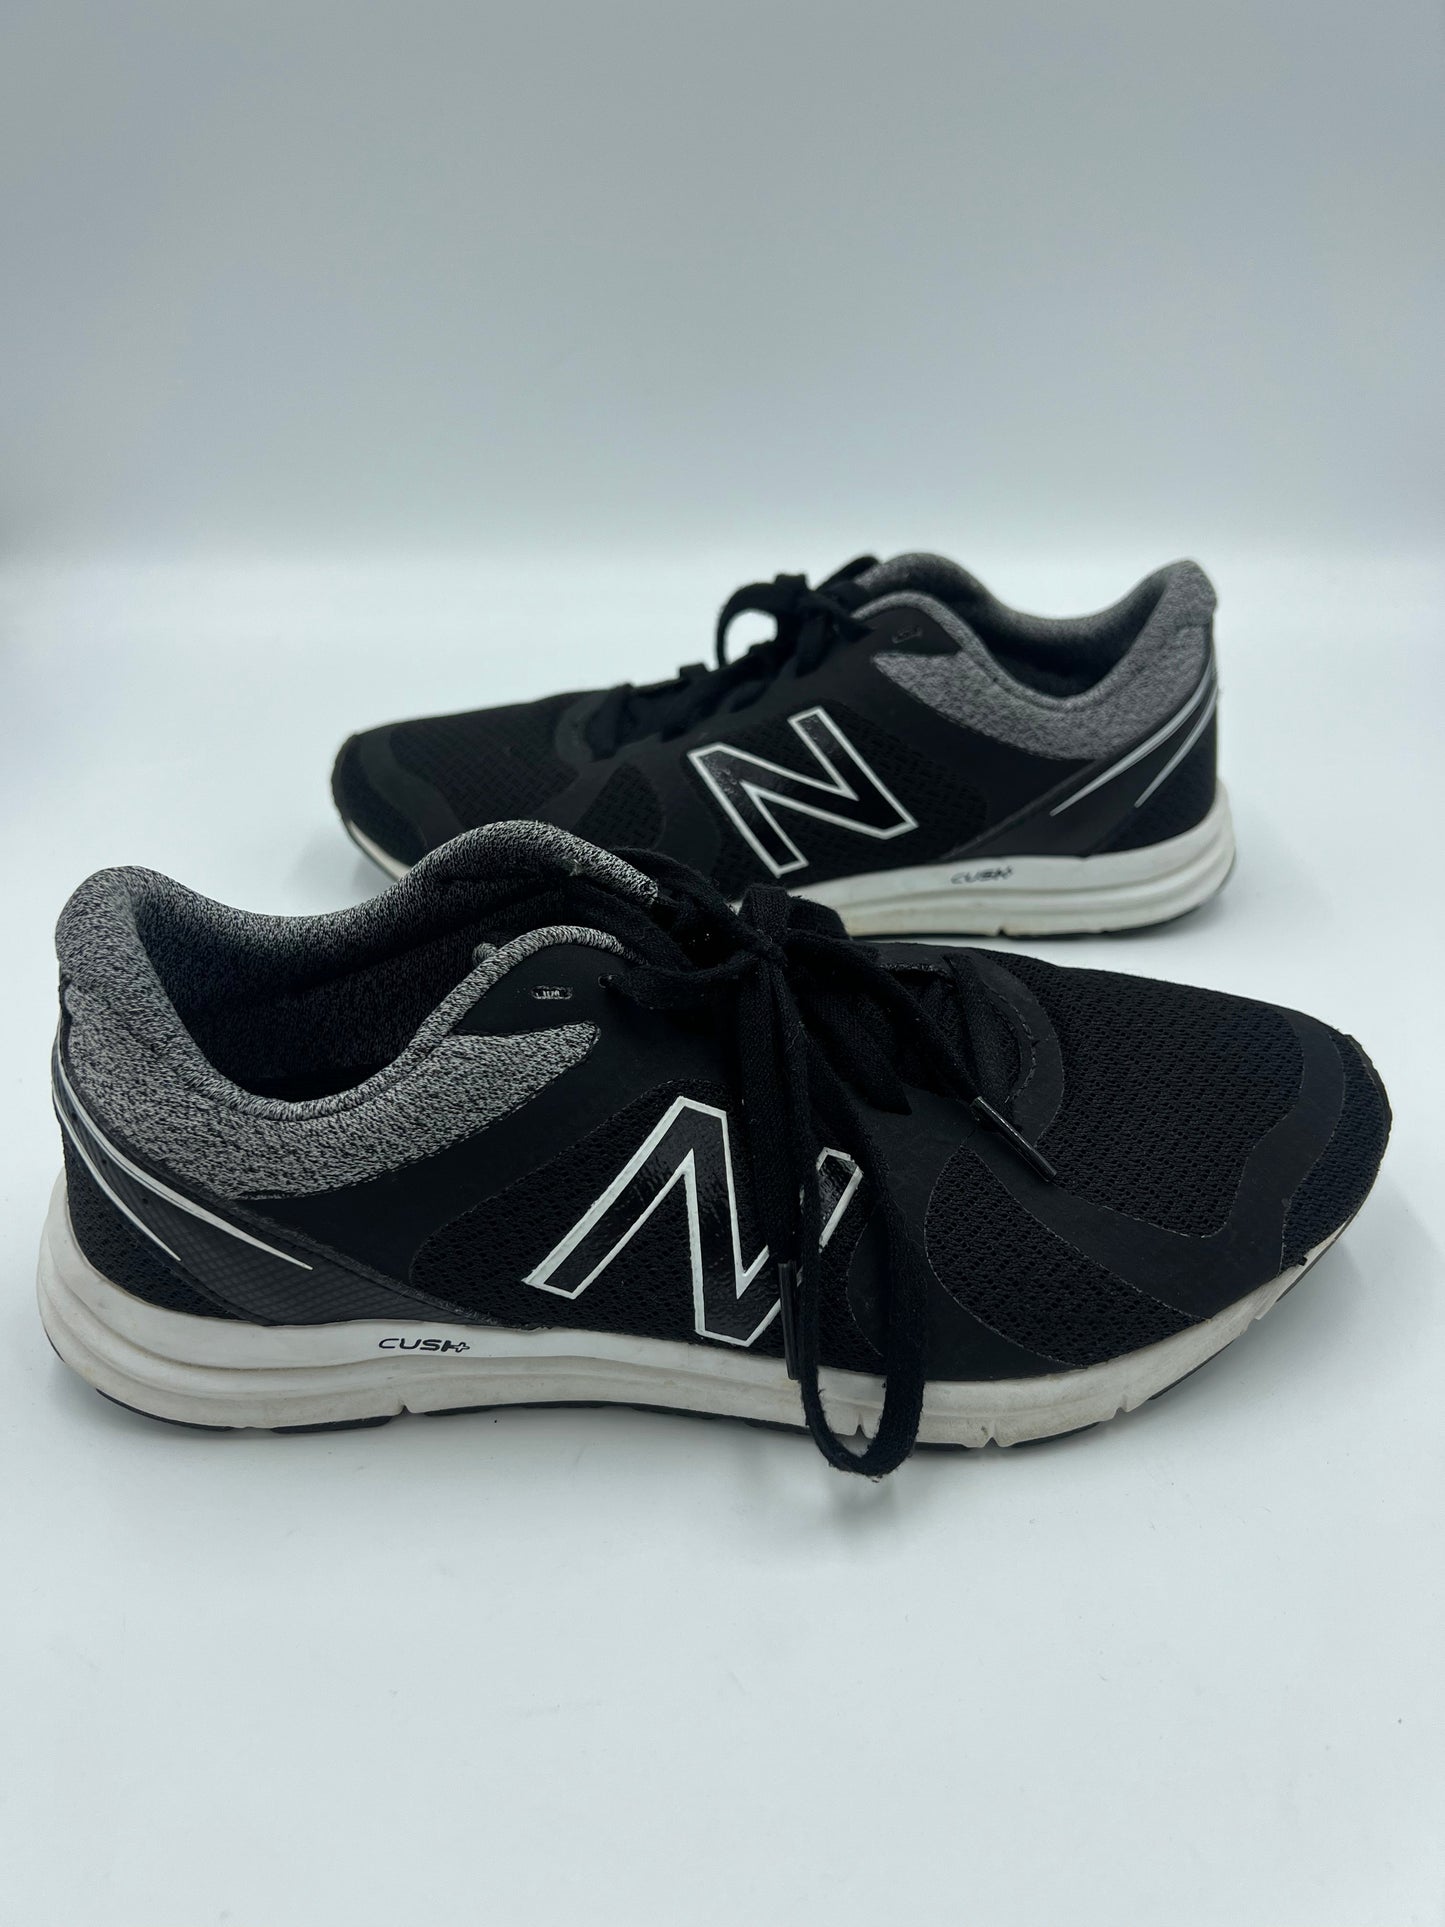 Black Shoes Athletic New Balance, Size 8